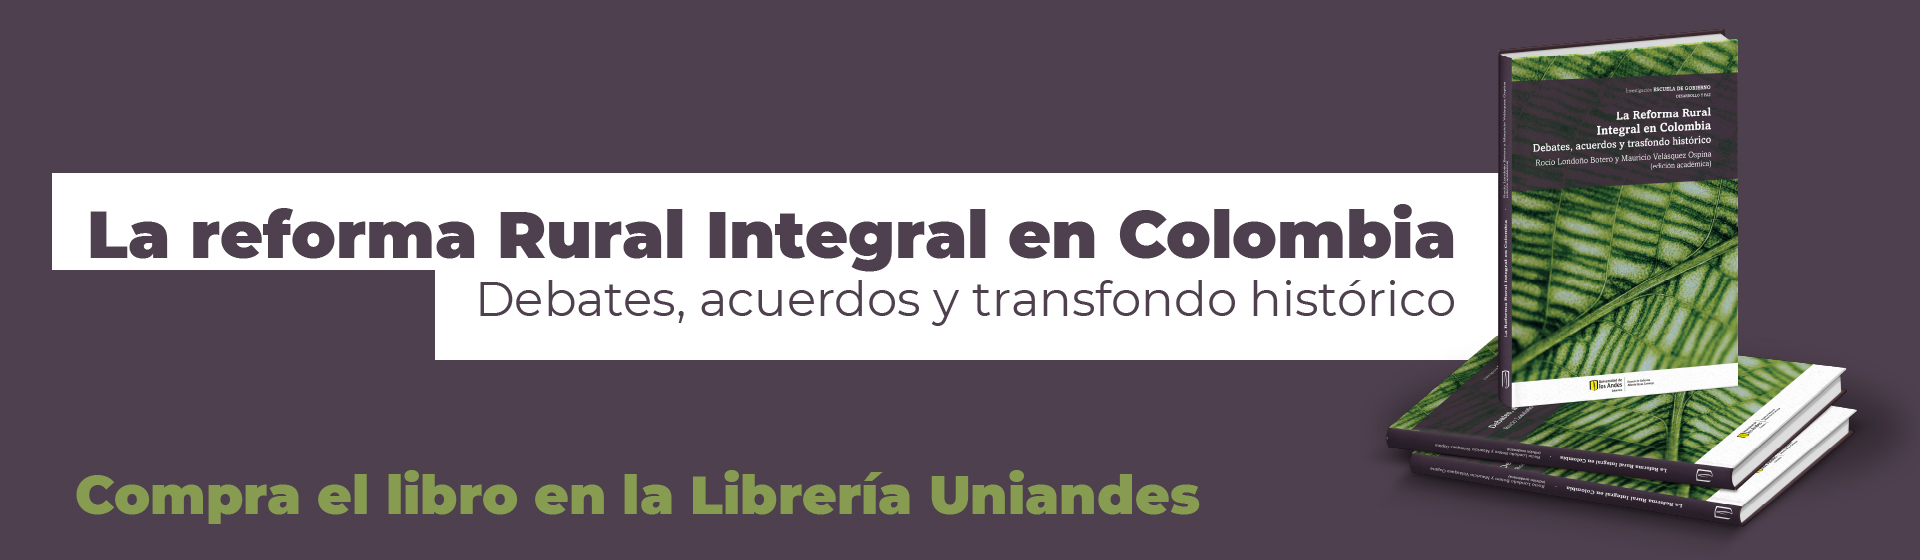 La reforma Rural Integral en Colombia